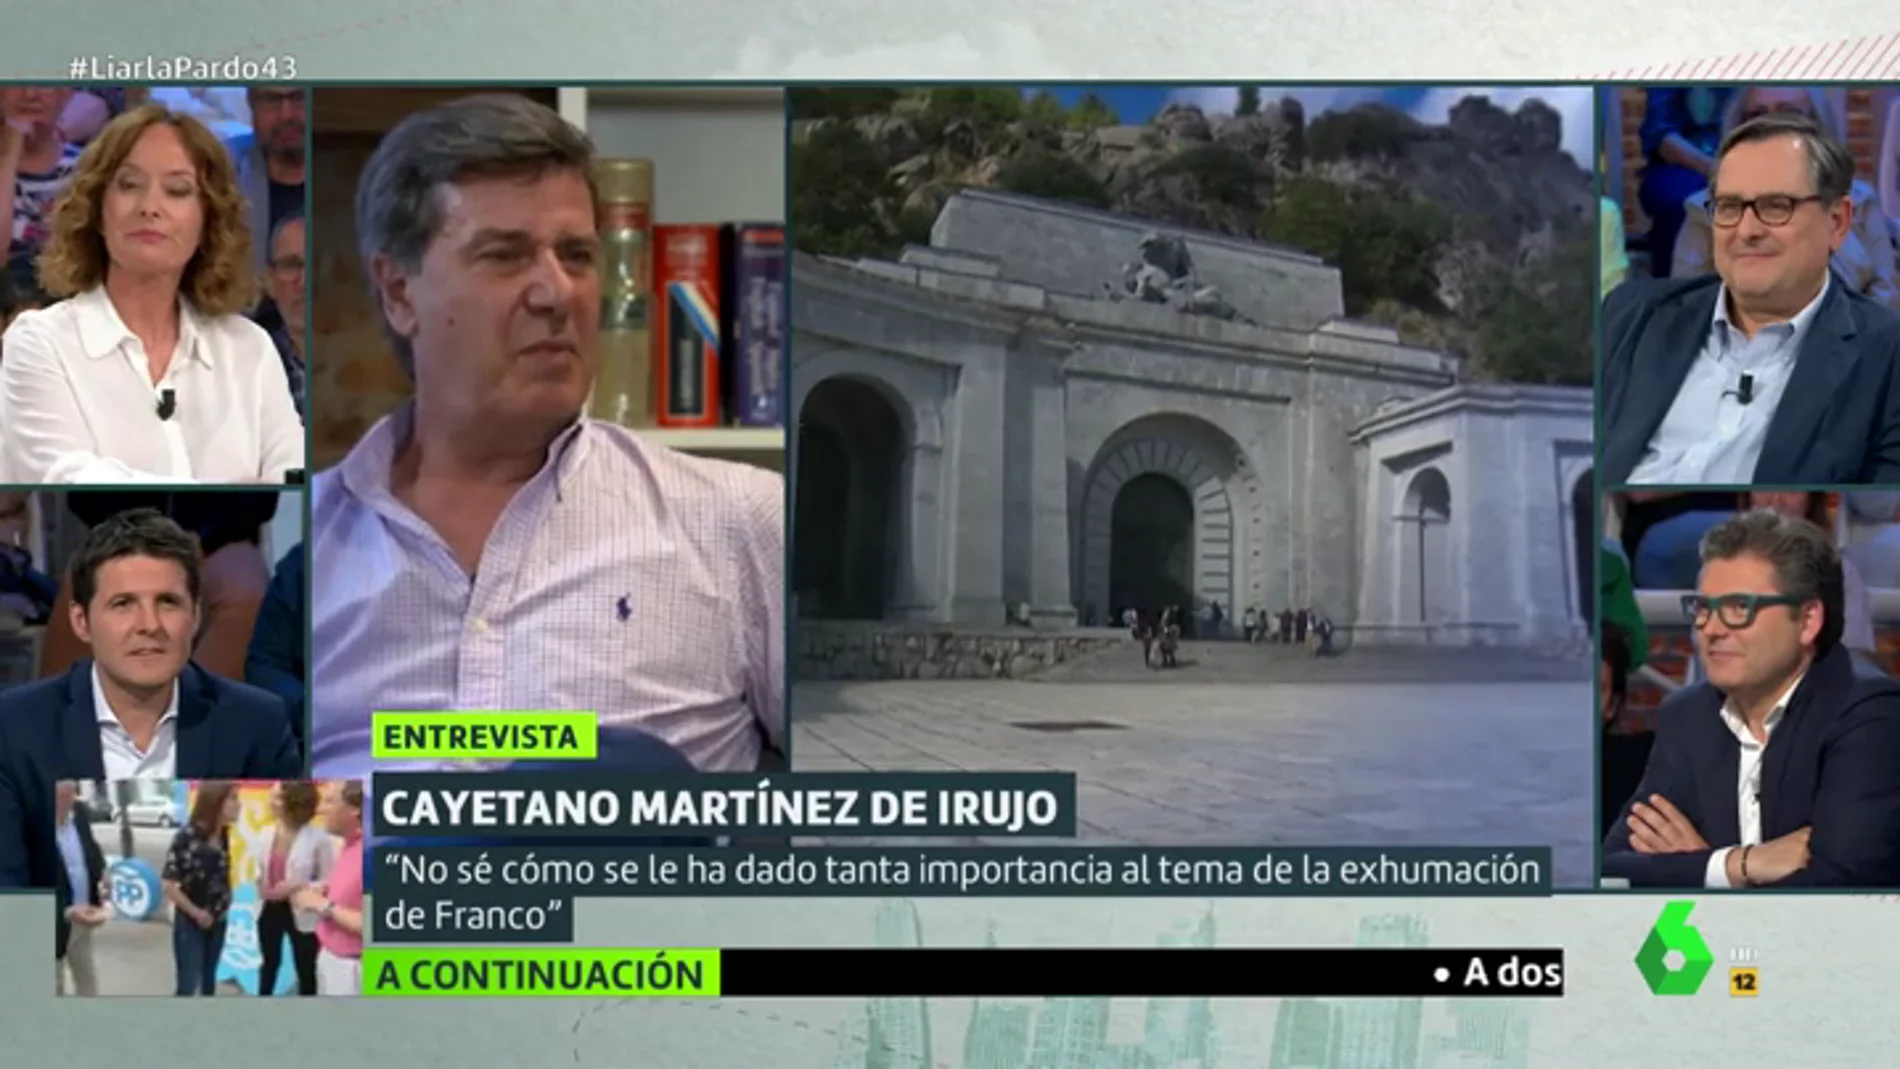 La opinión de Cayetano Martínez de Irujo sobre la exhumación de Franco: "El Valle de los Caídos es un sitio terrible"